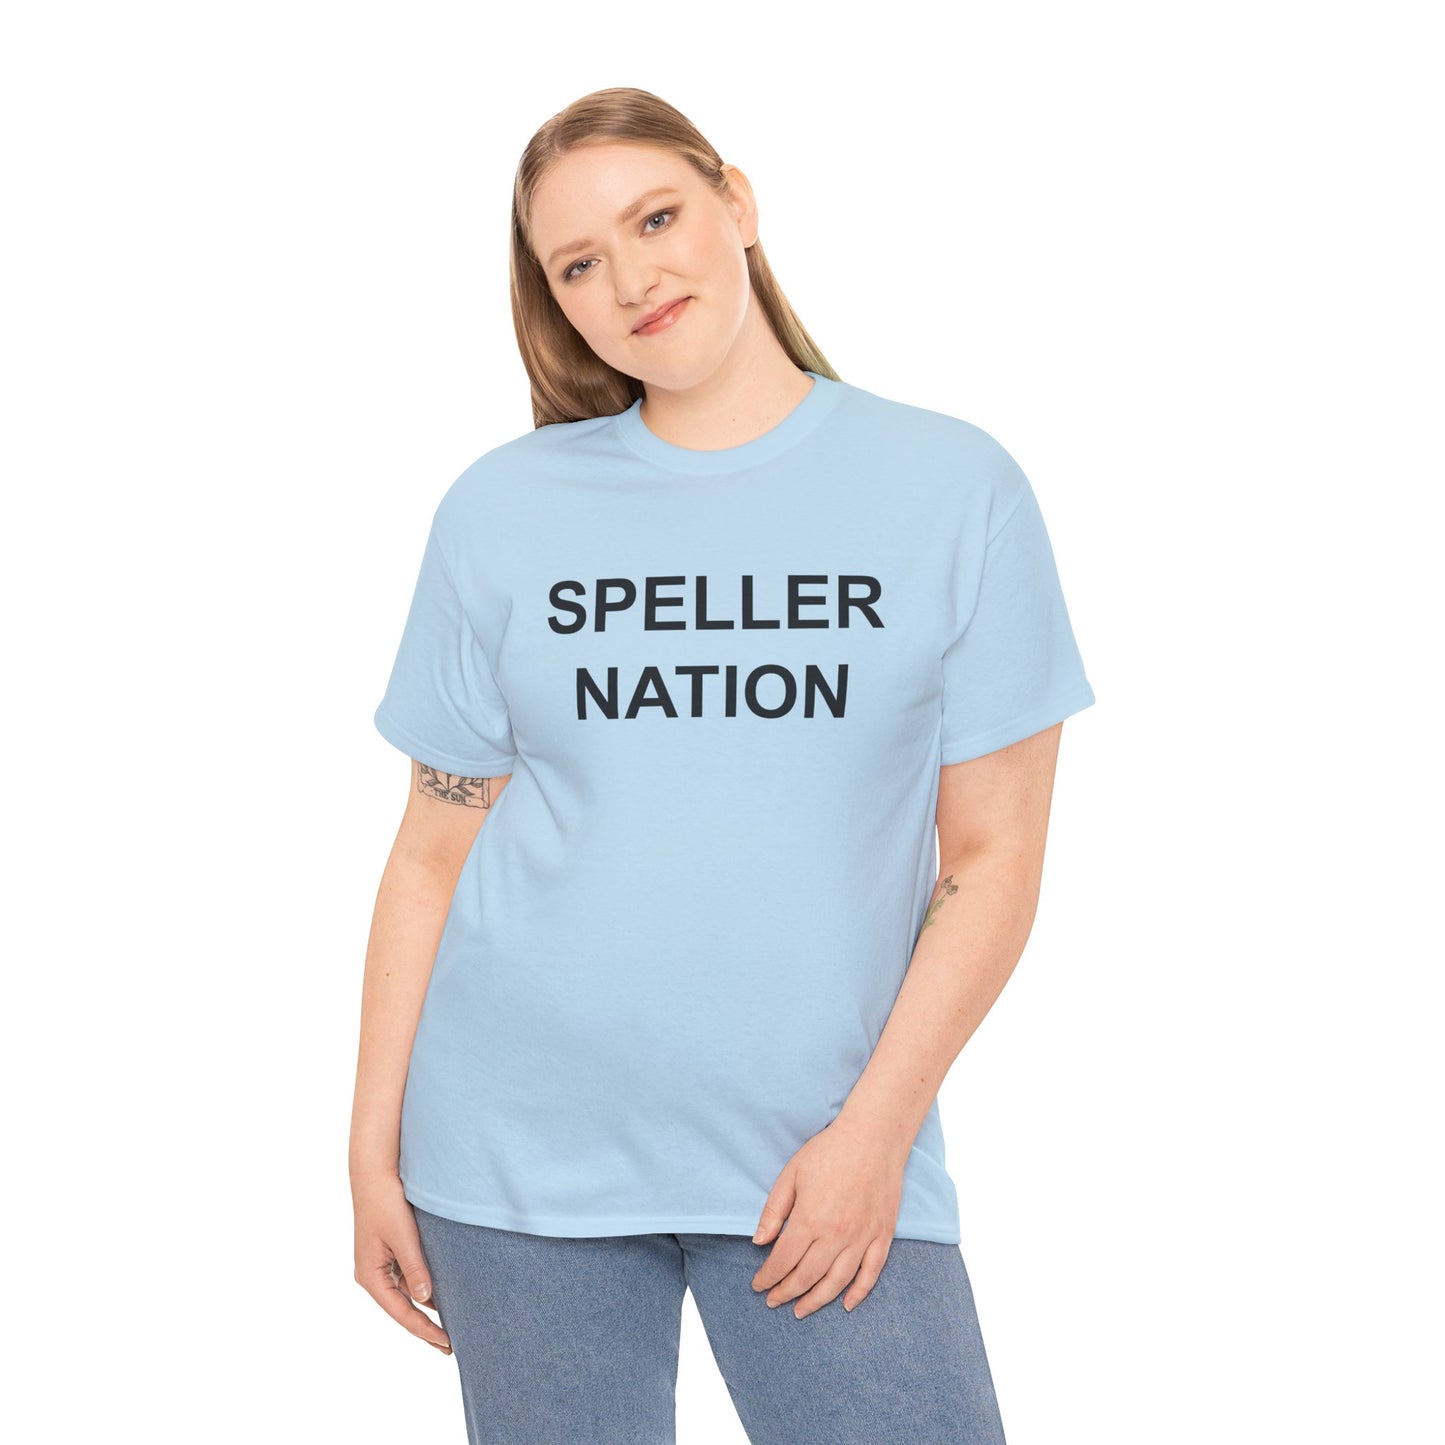 Speller Nation. Unisex Tee.